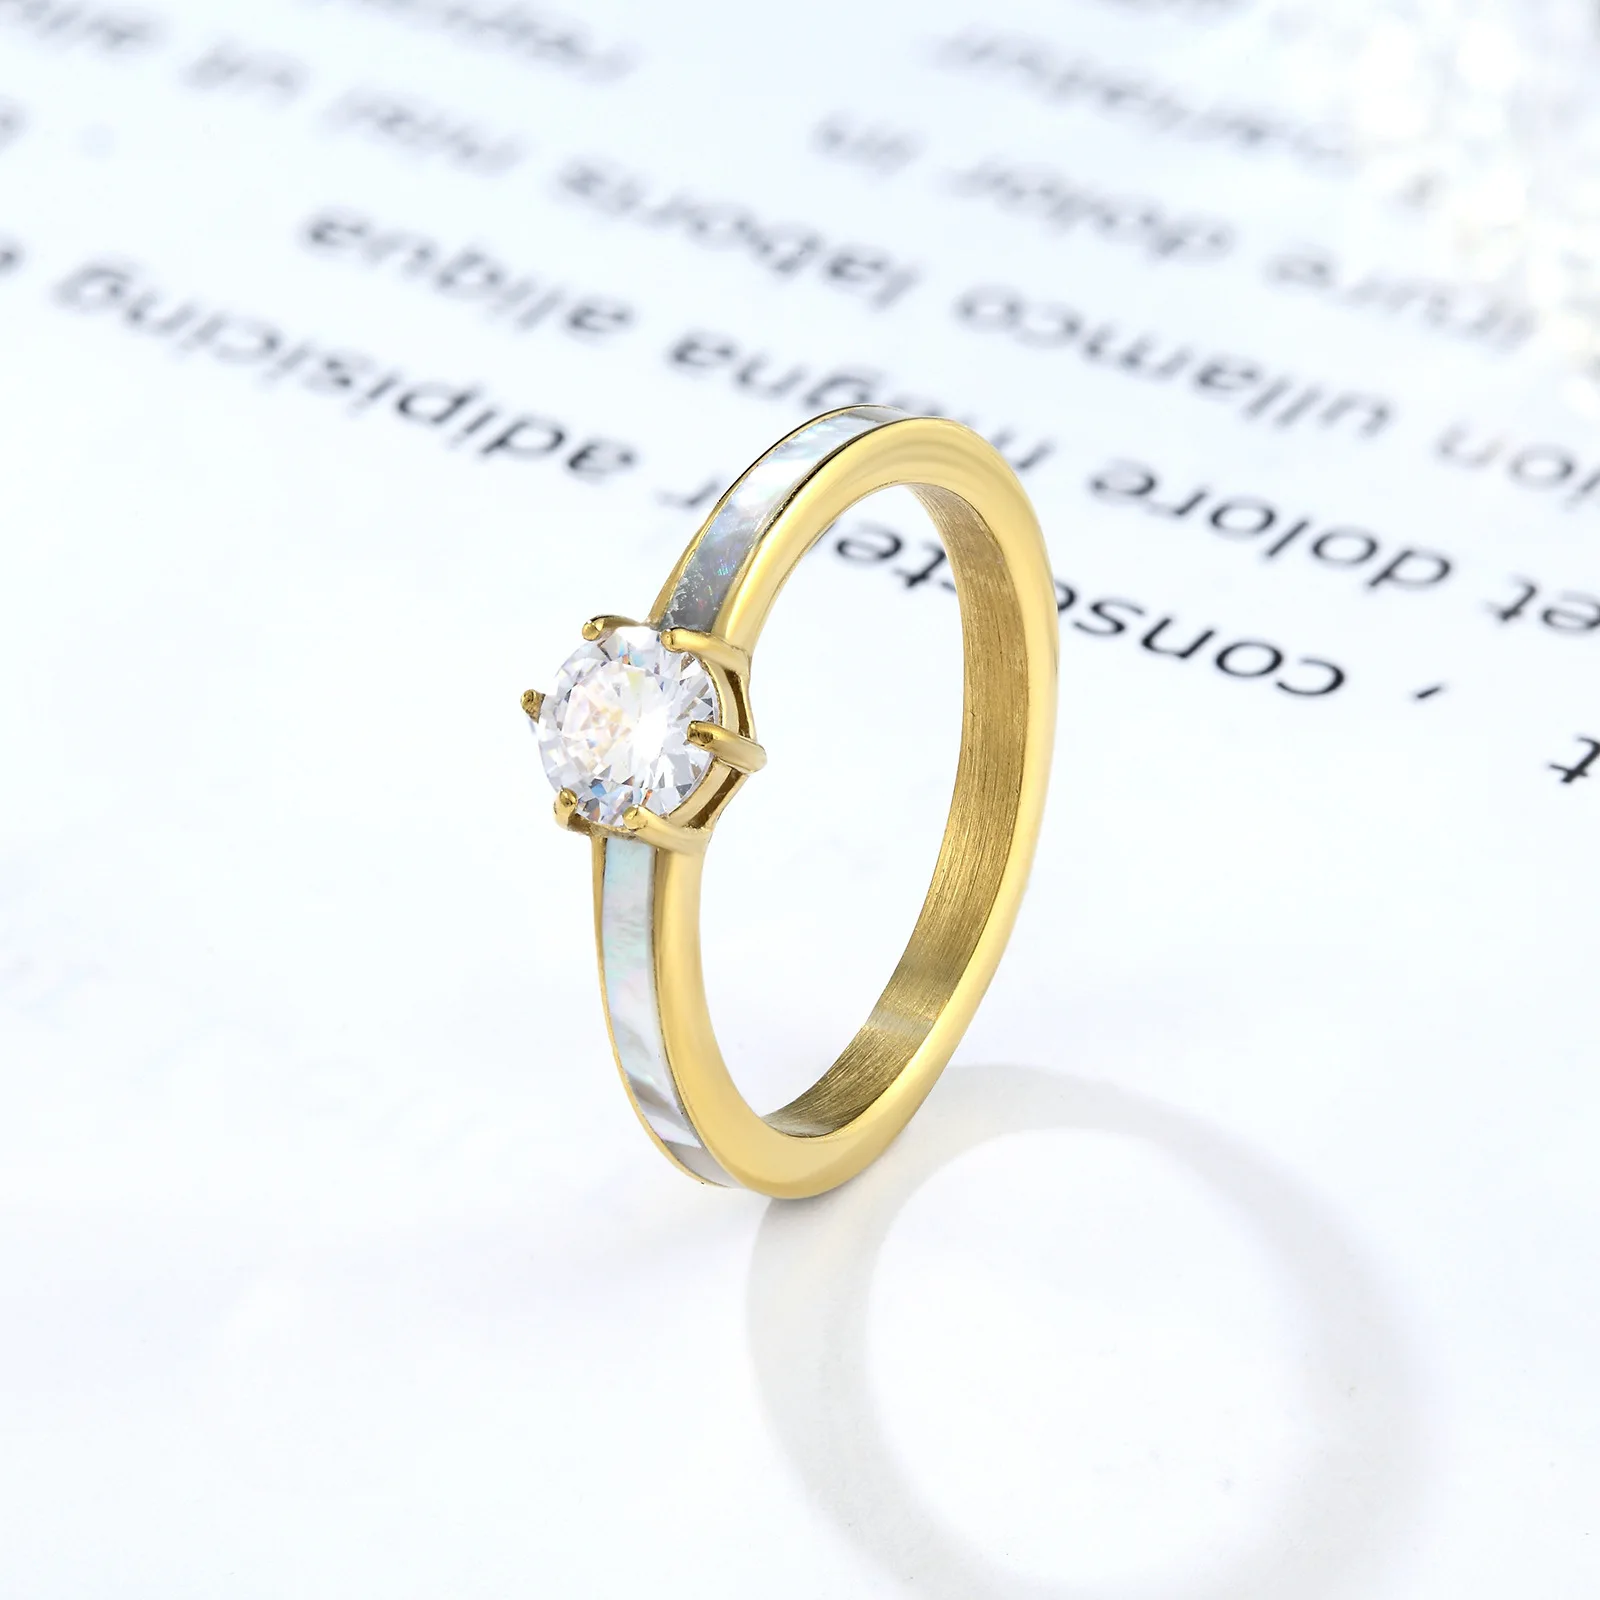 יוקרה קריסטל טיטניום פלדה נשים טבעת לבן ים פגז קריסטל טבעת של הזוג טבעת האהבה תכשיט מתנה - 2